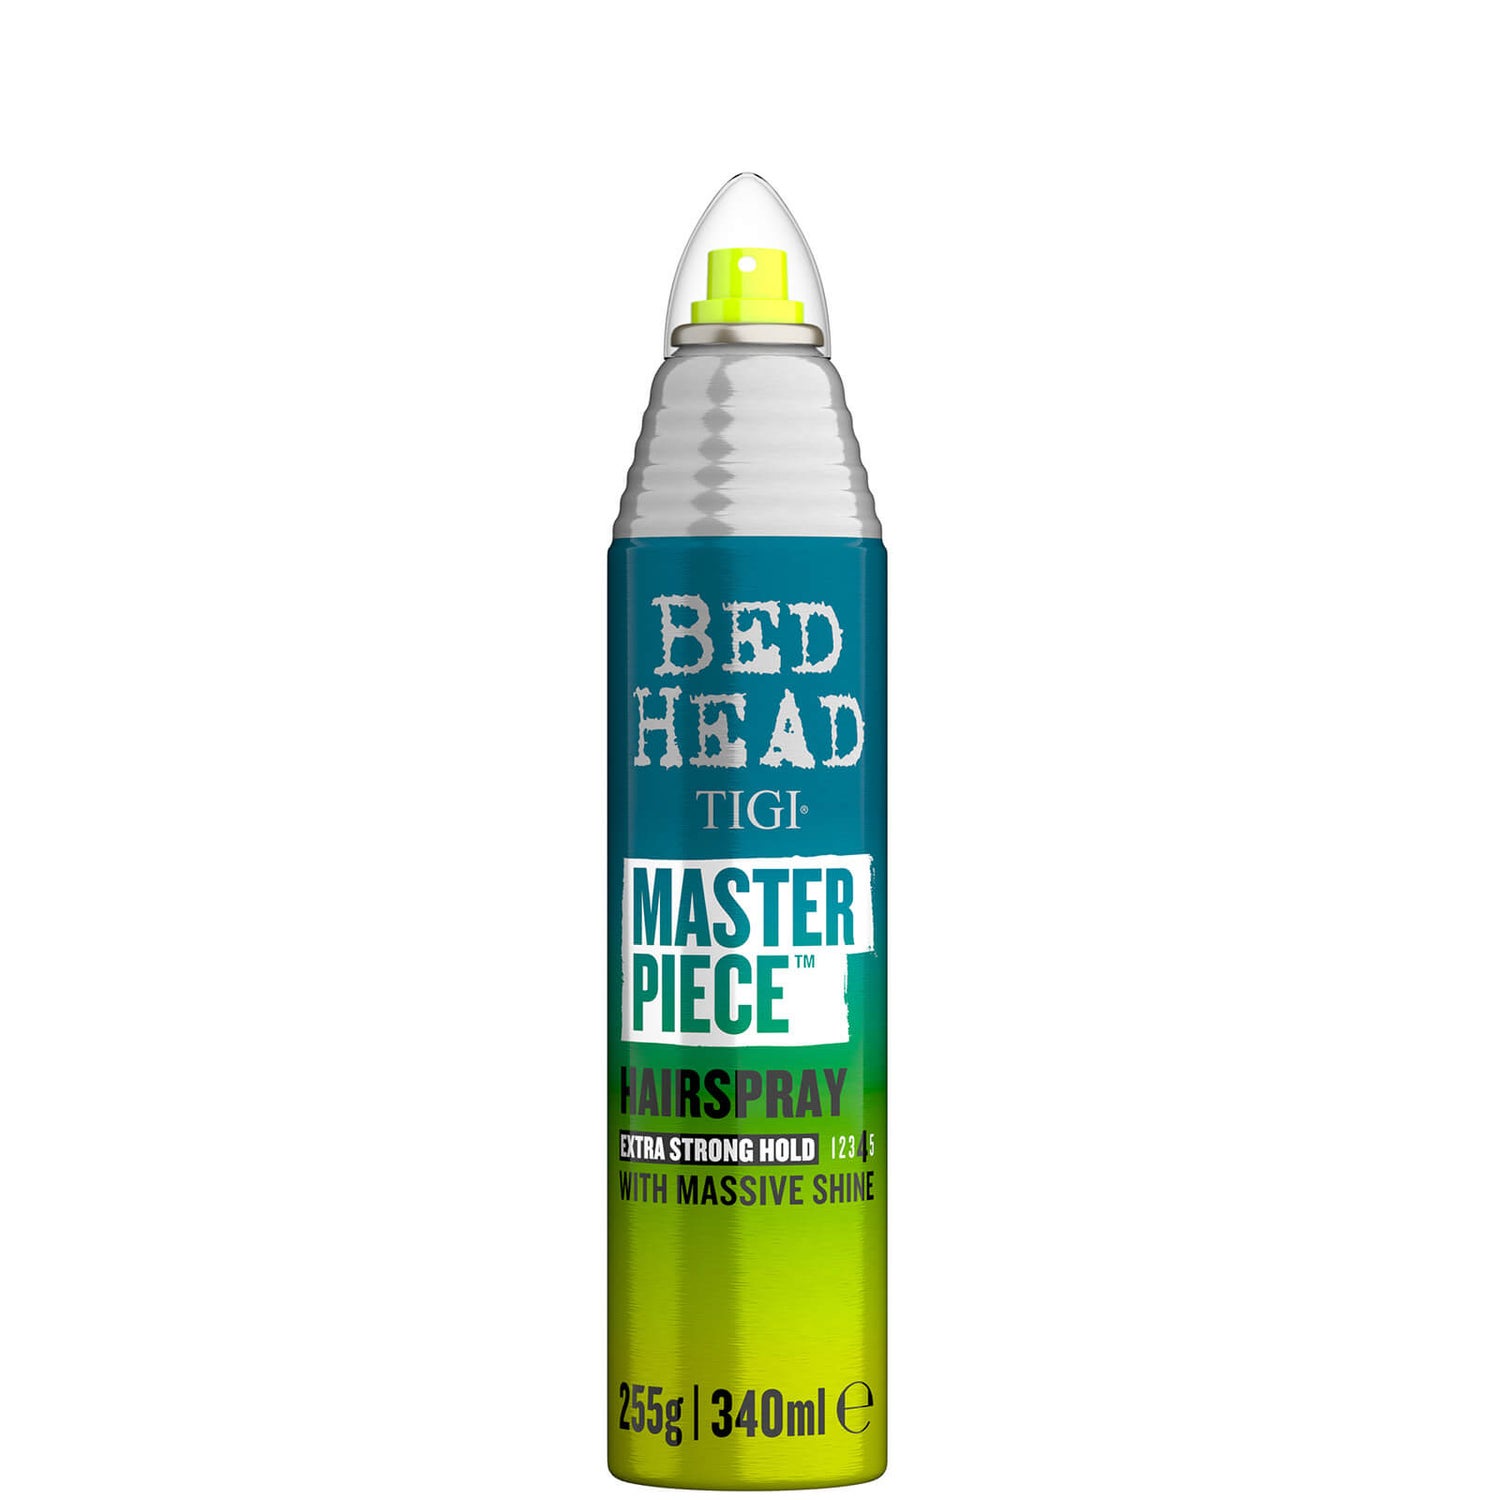 TIGI Bed Head Masterpiece Shiny Hairspray per una forte tenuta e lucentezza 340ml